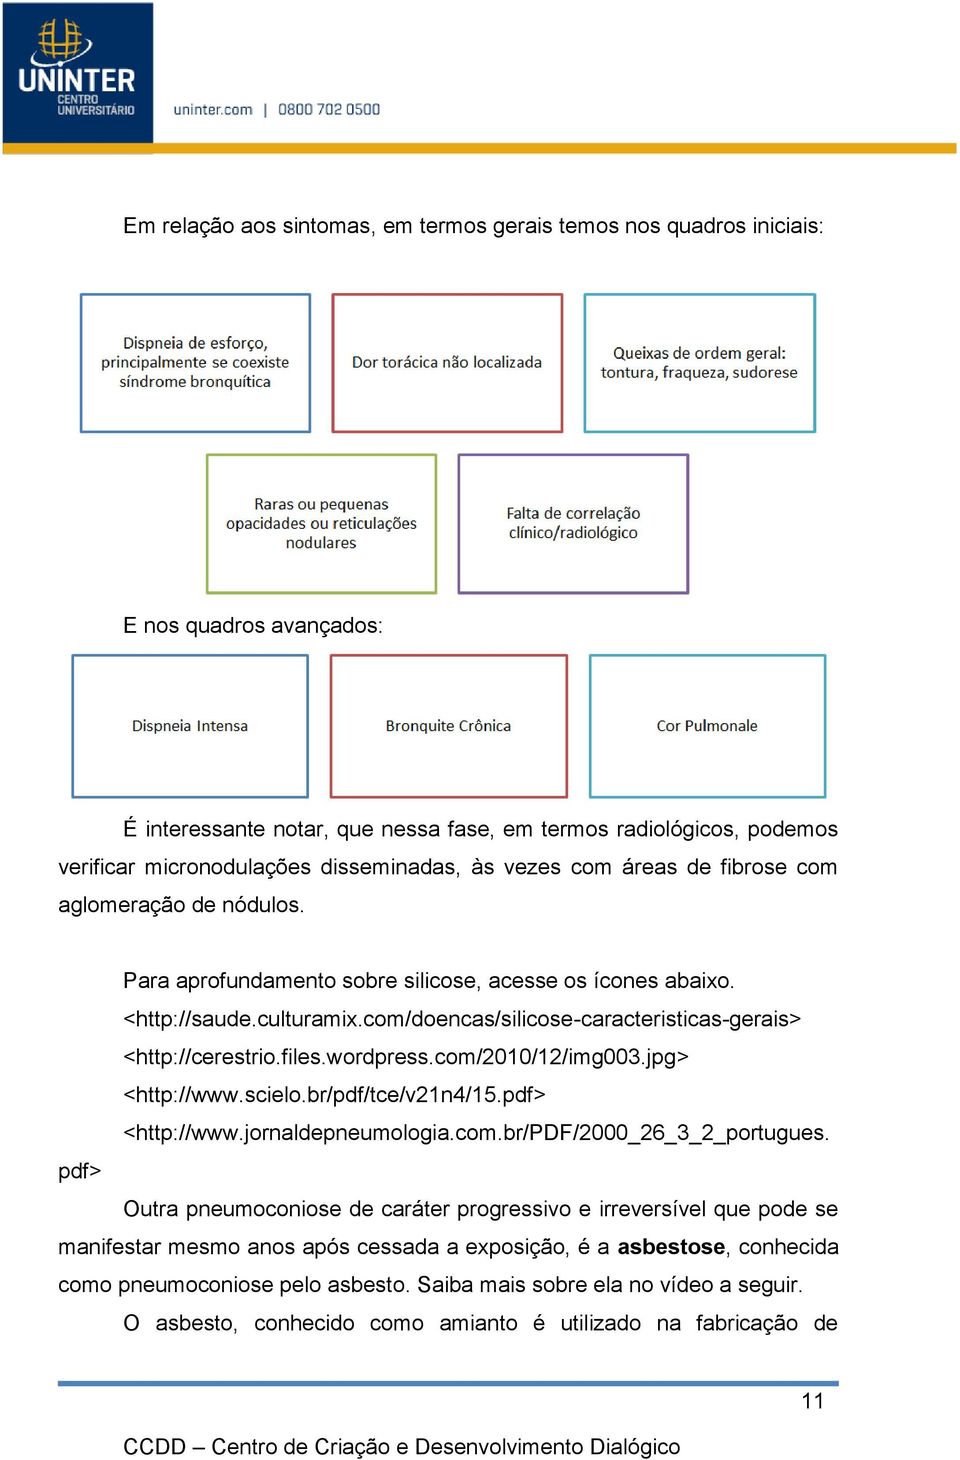 com/doencas/silicose-caracteristicas-gerais> <http://cerestrio.files.wordpress.com/2010/12/img003.jpg> <http://www.scielo.br/pdf/tce/v21n4/15.pdf> <http://www.jornaldepneumologia.com.br/pdf/2000_26_3_2_portugues.